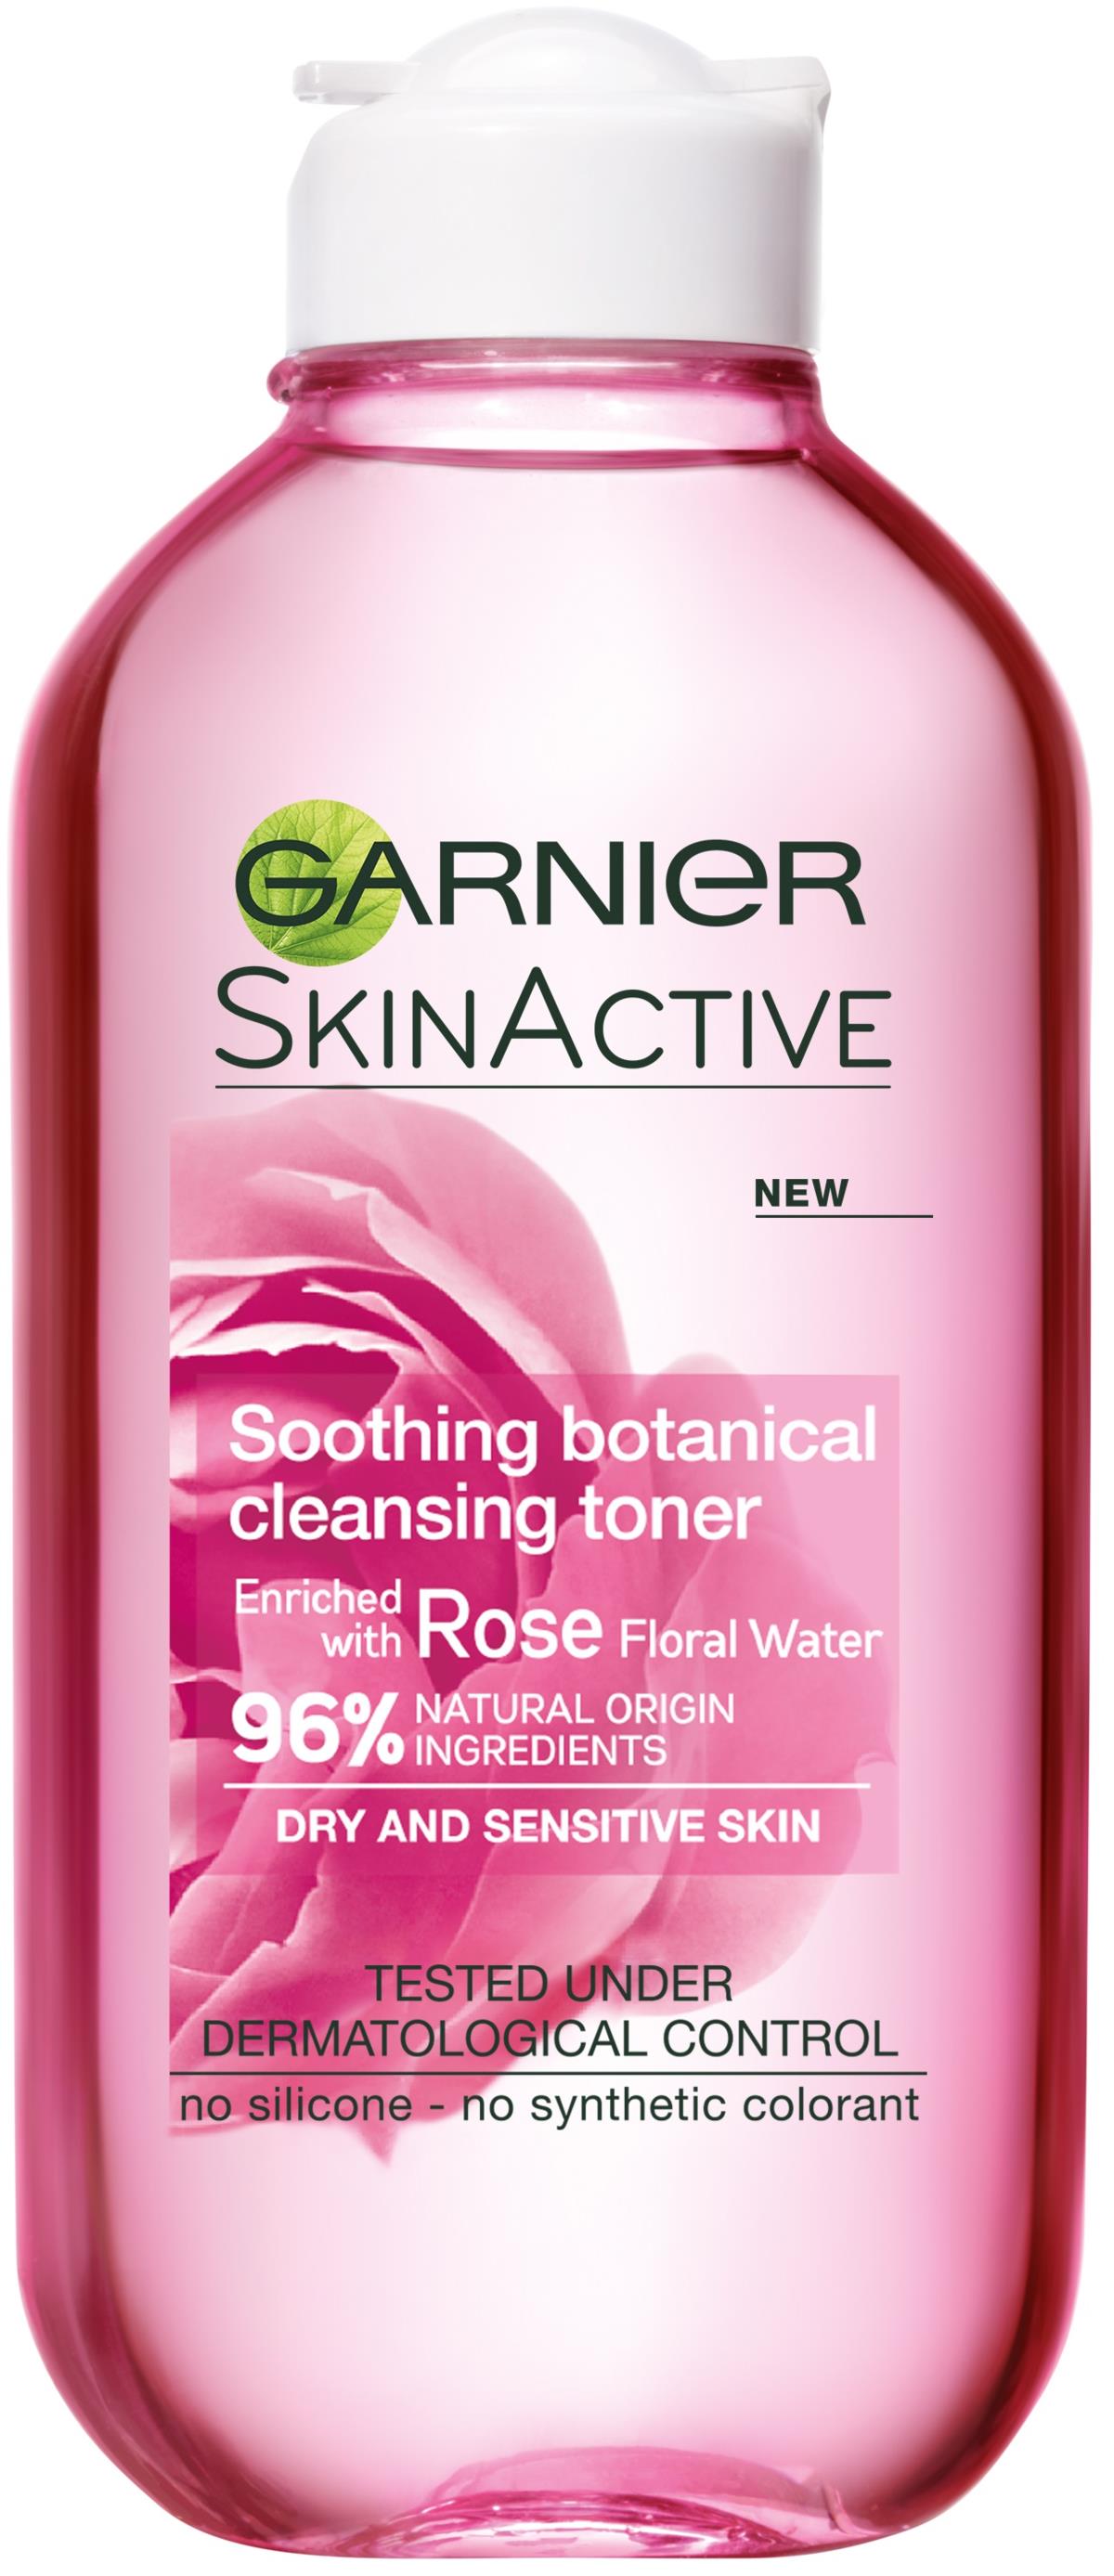 Cleansing 200 Soothing Toner Garnier SkinActive Botanical ml